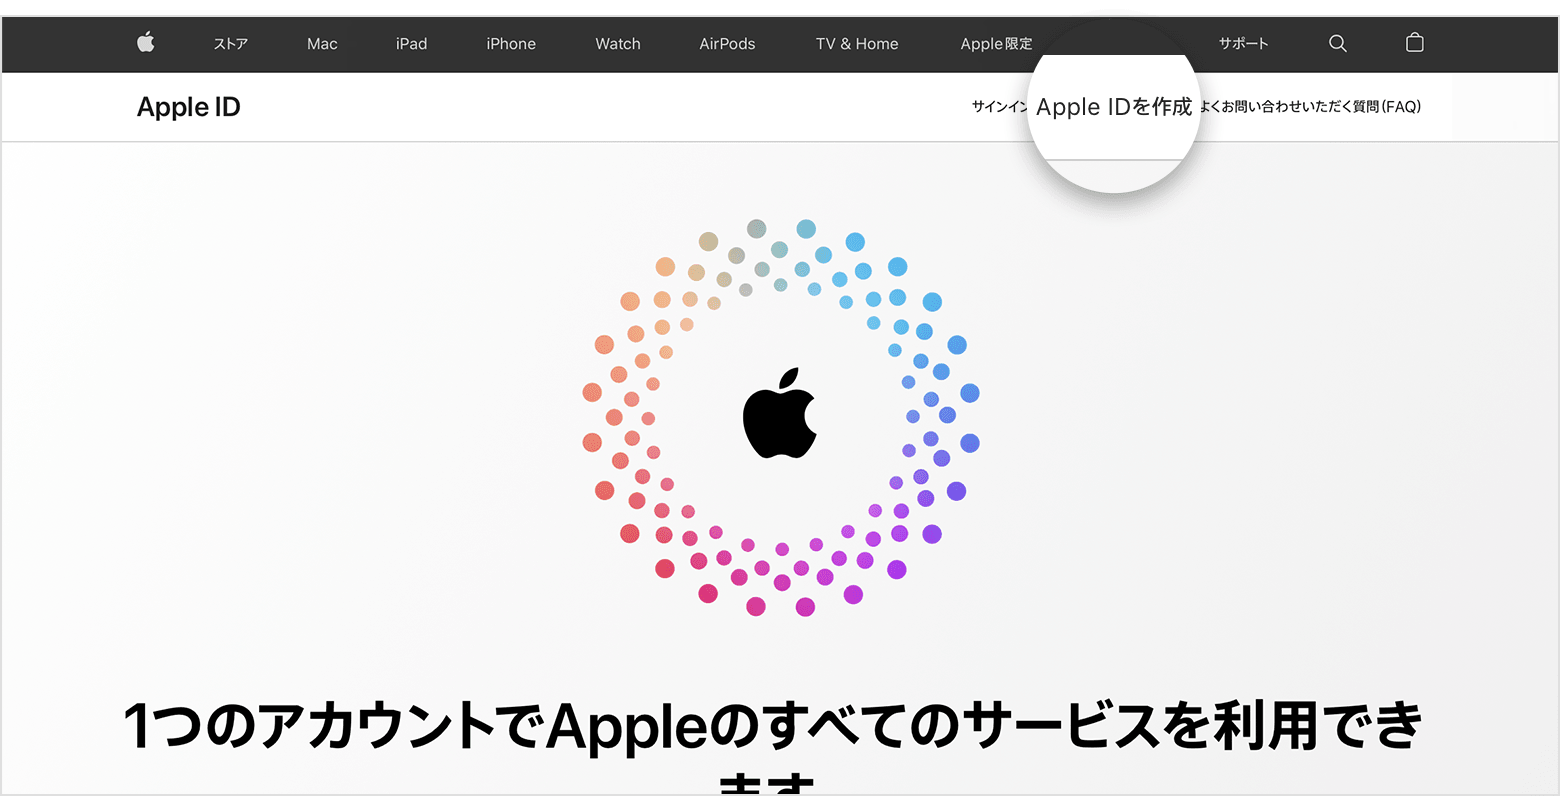 appleid.apple.com のスクリーンショット。画面の中央に Apple ロゴがあり、その周りを同心円状にカラフルな丸印が囲んでいます。